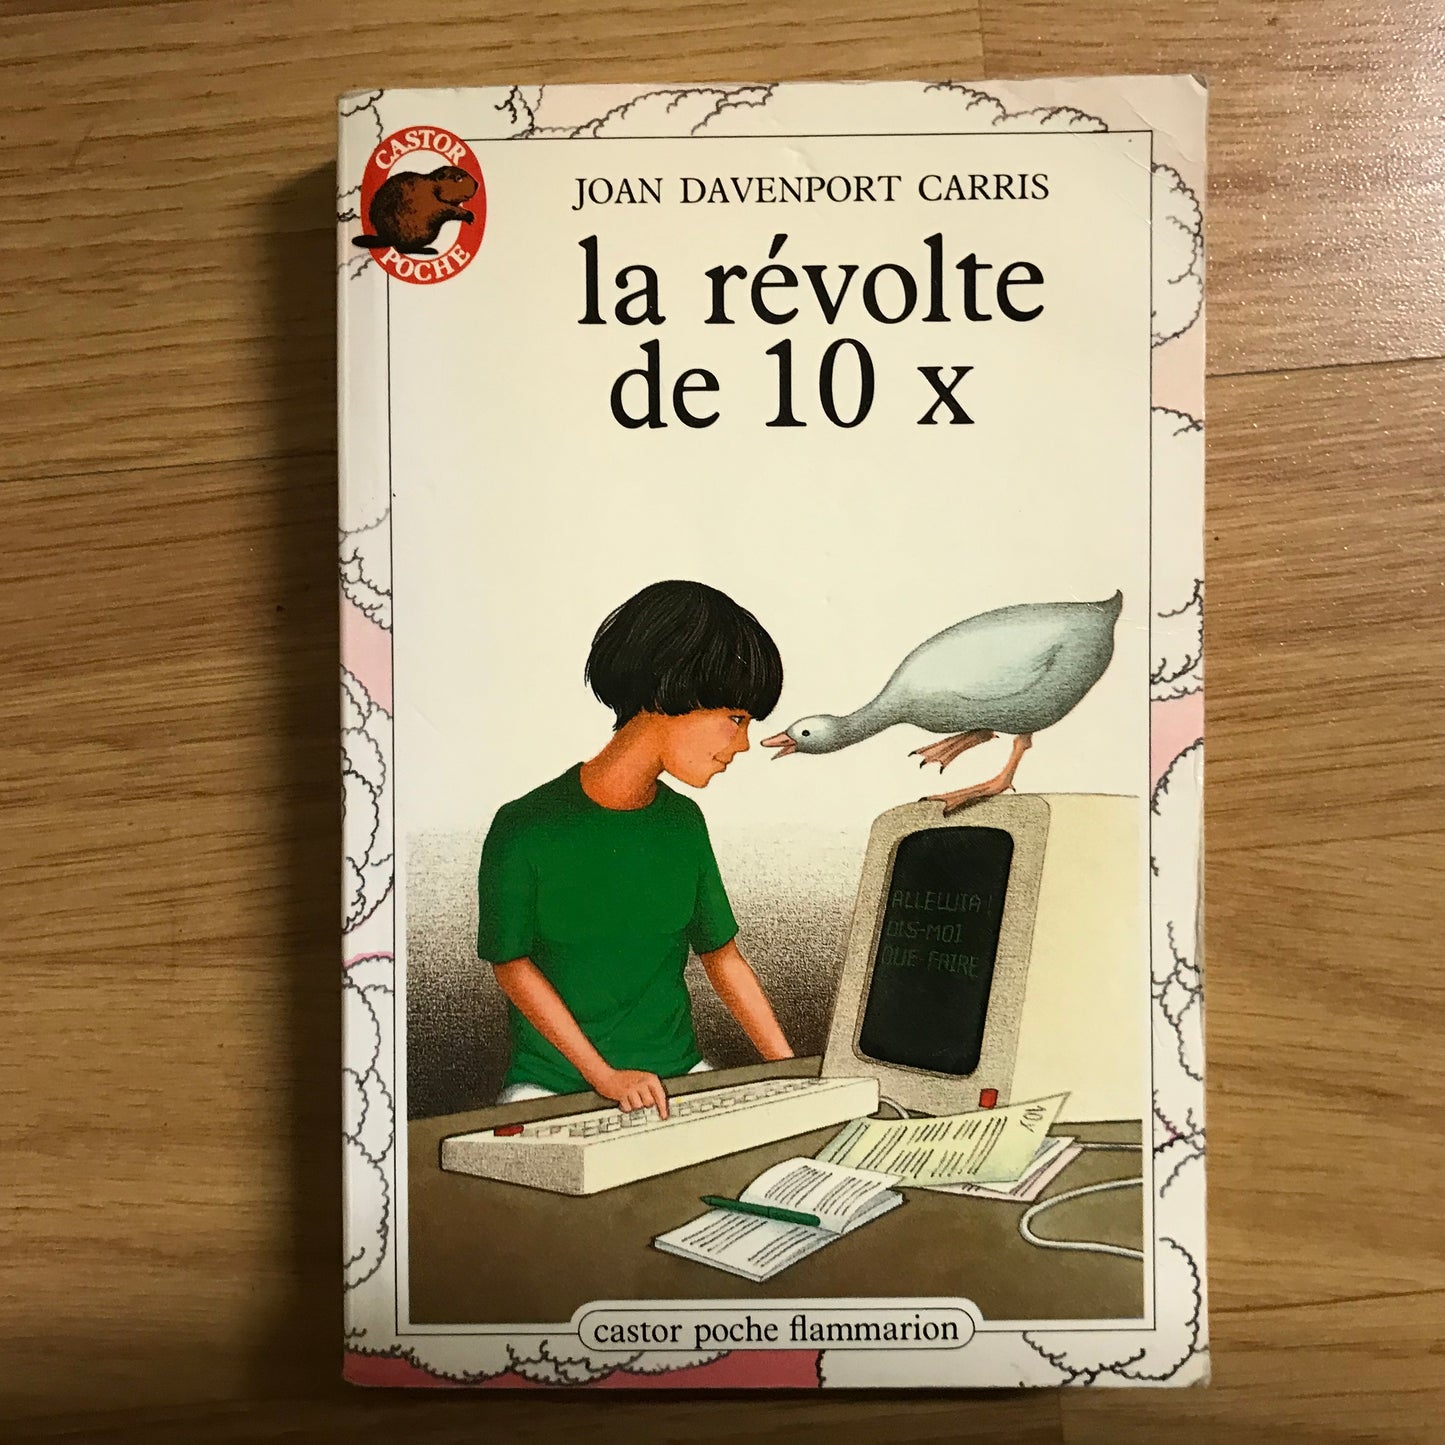 Davenport Carris, Joan - La révolte de 10x